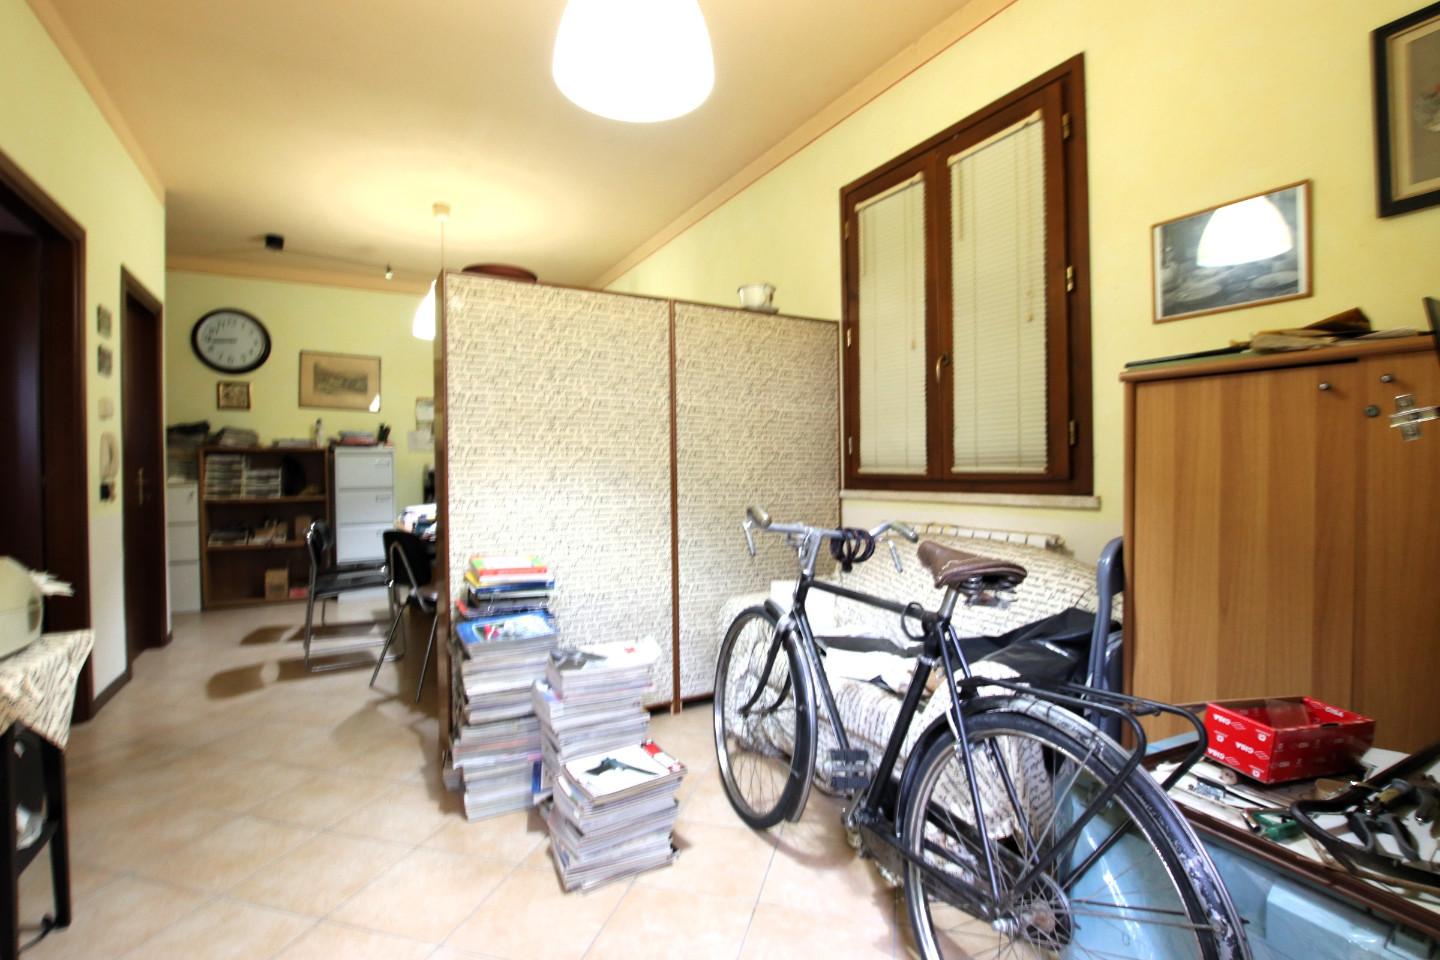 Ufficio in vendita Lucca